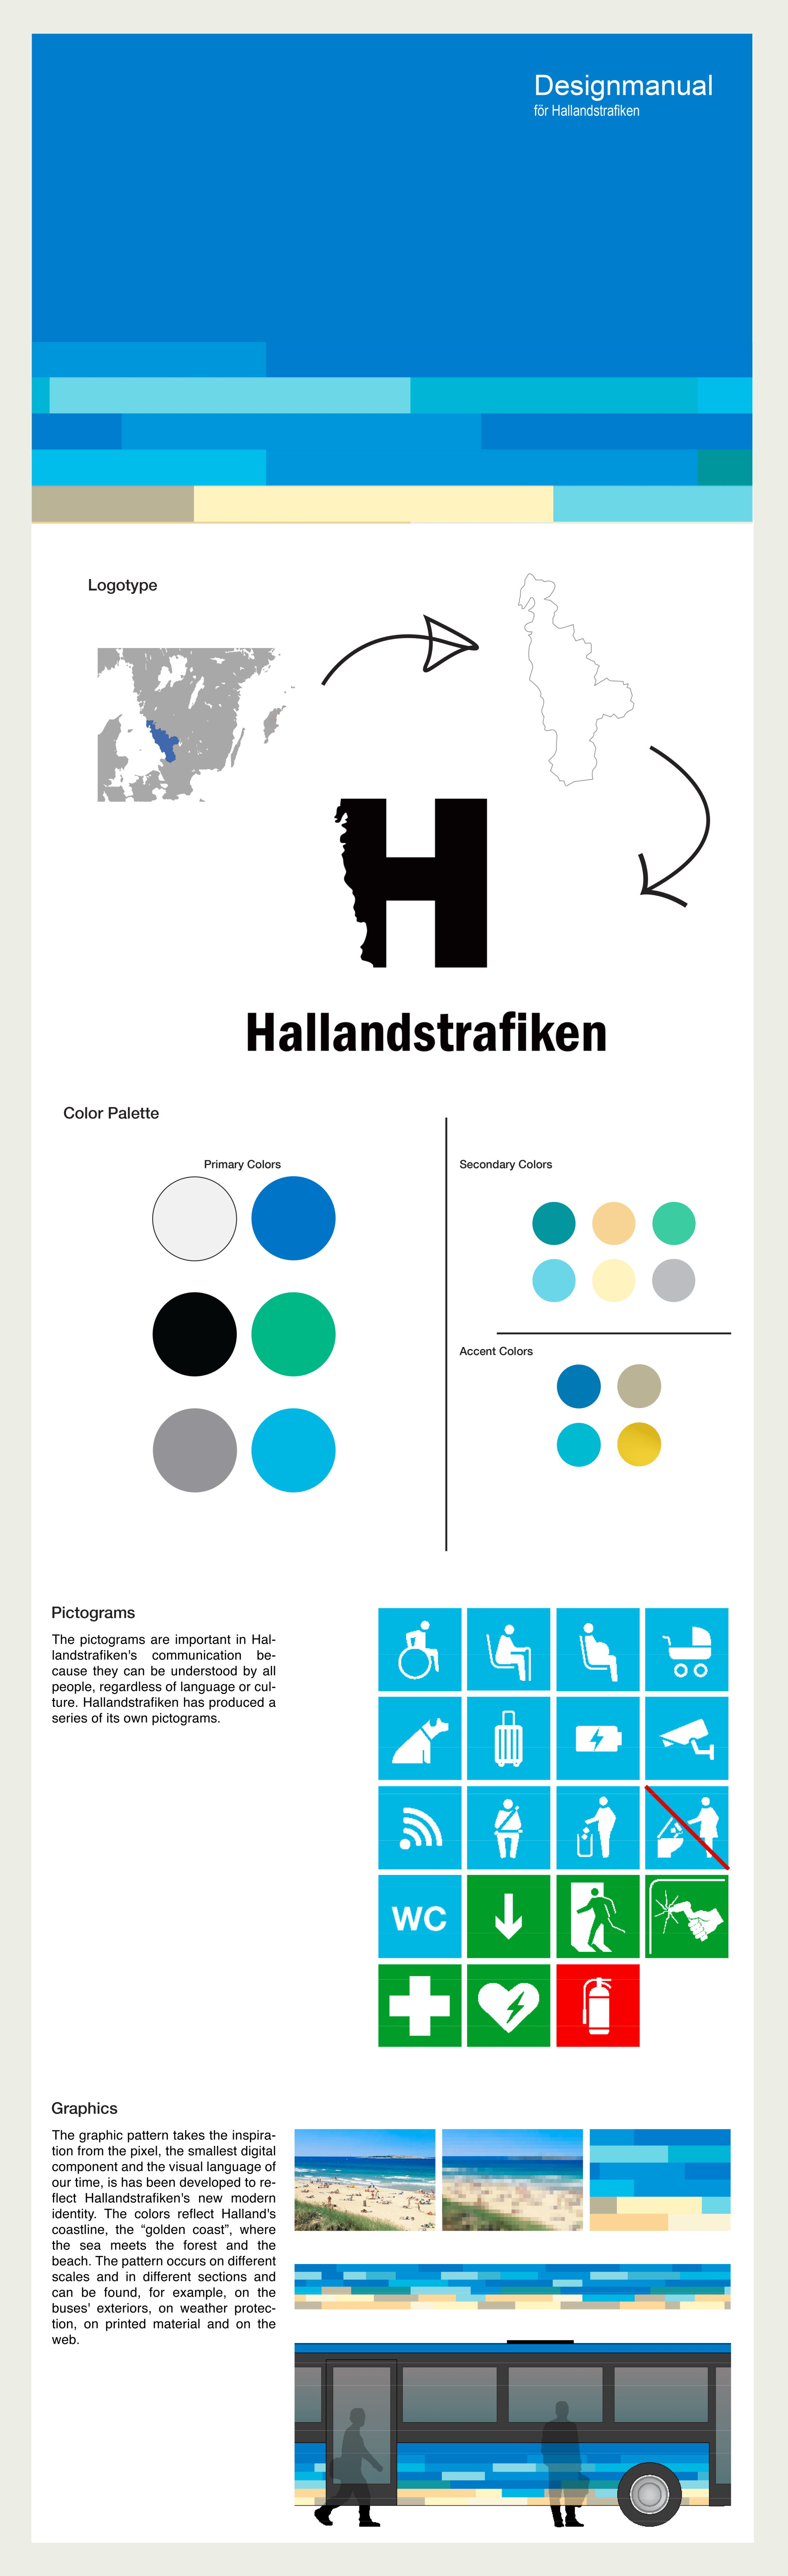 Hallndstrafiken Design Guide + Logo